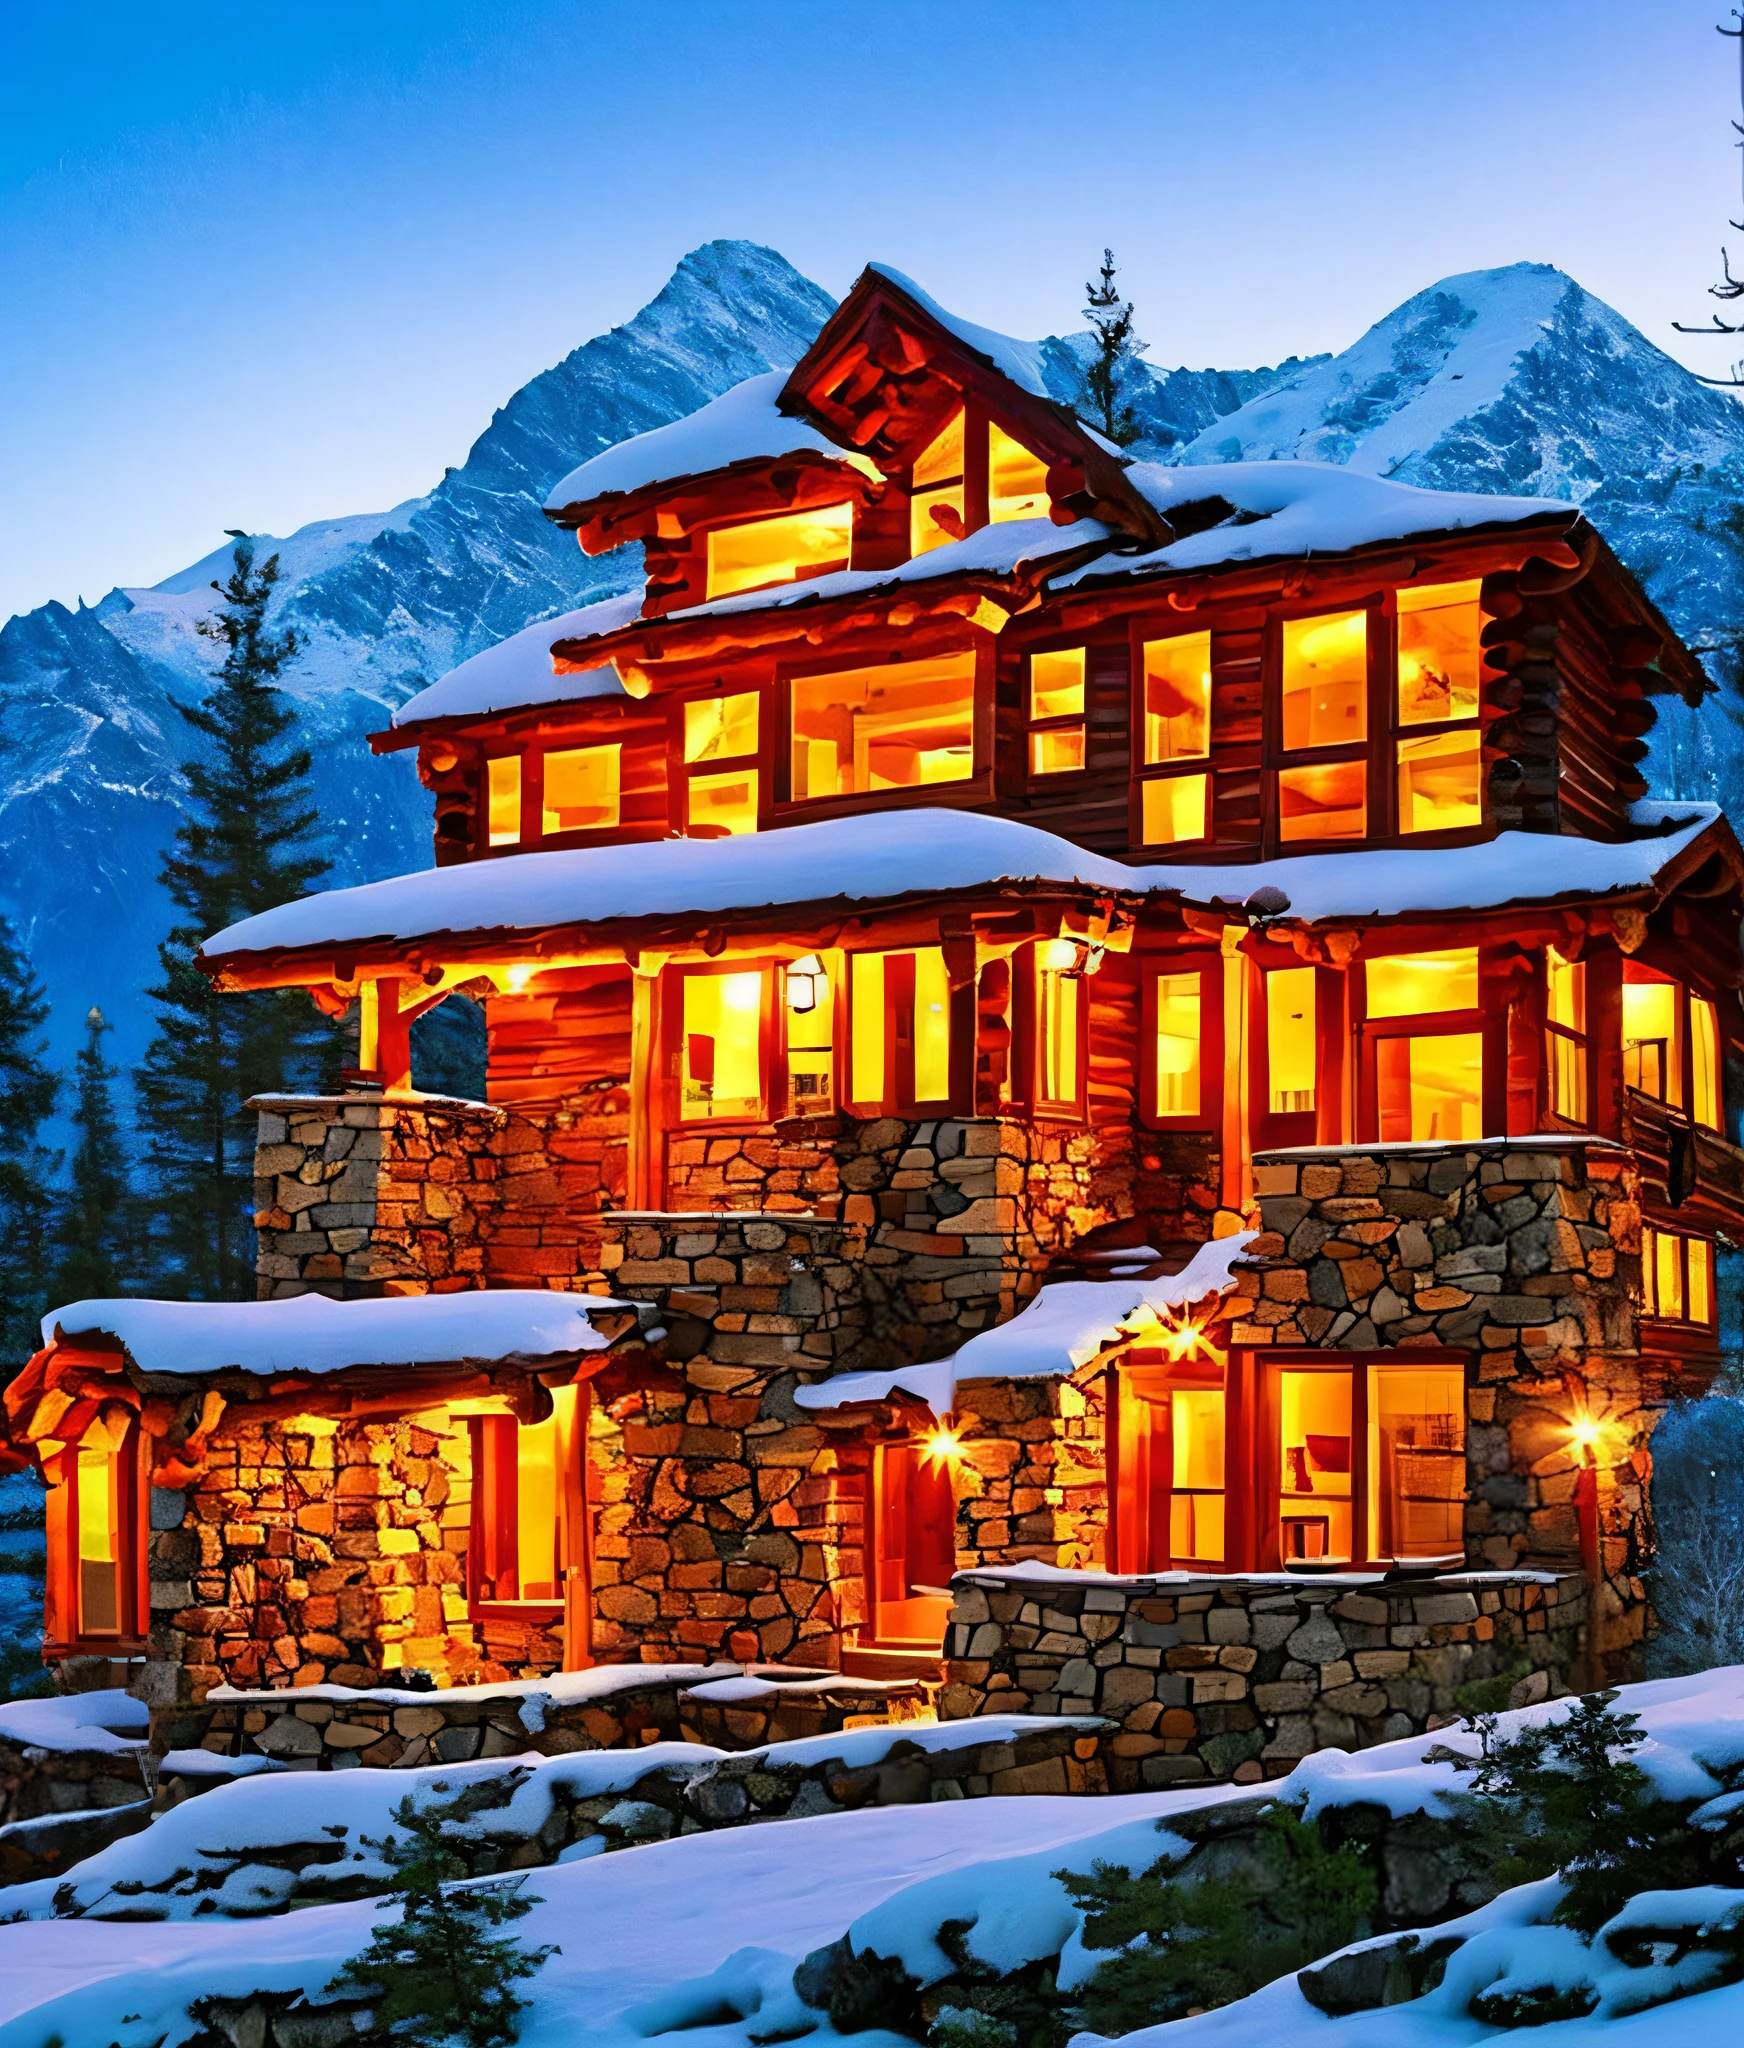 Создайте красивую горную сцену с бревенчатым домом рядом с суровой горой с заснеженными вершинами и красивым закатом.